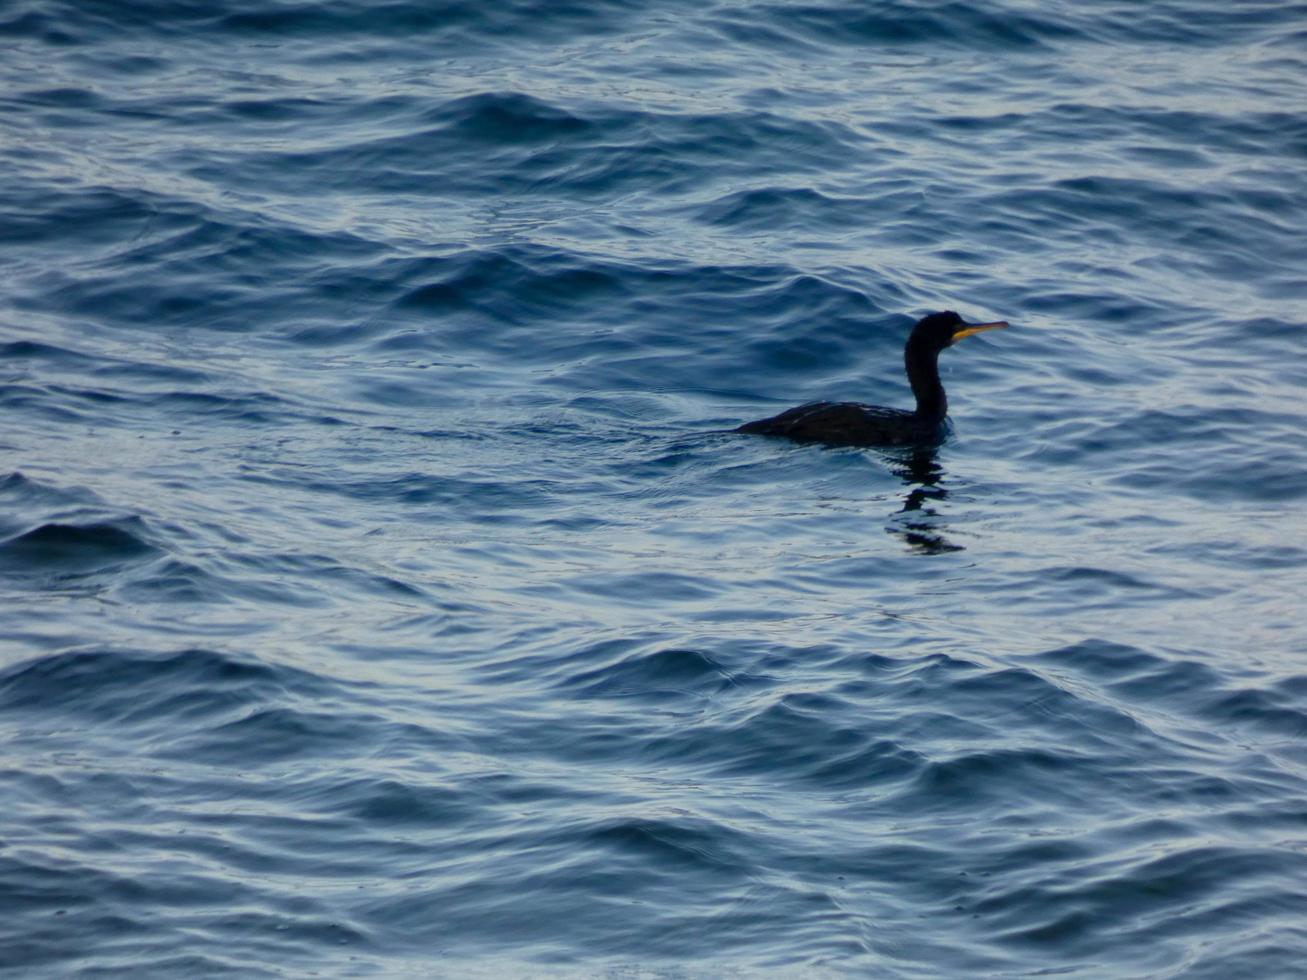 sjöfågel som väntar på en fångst, uppflugen på ett lugnt blått hav foto